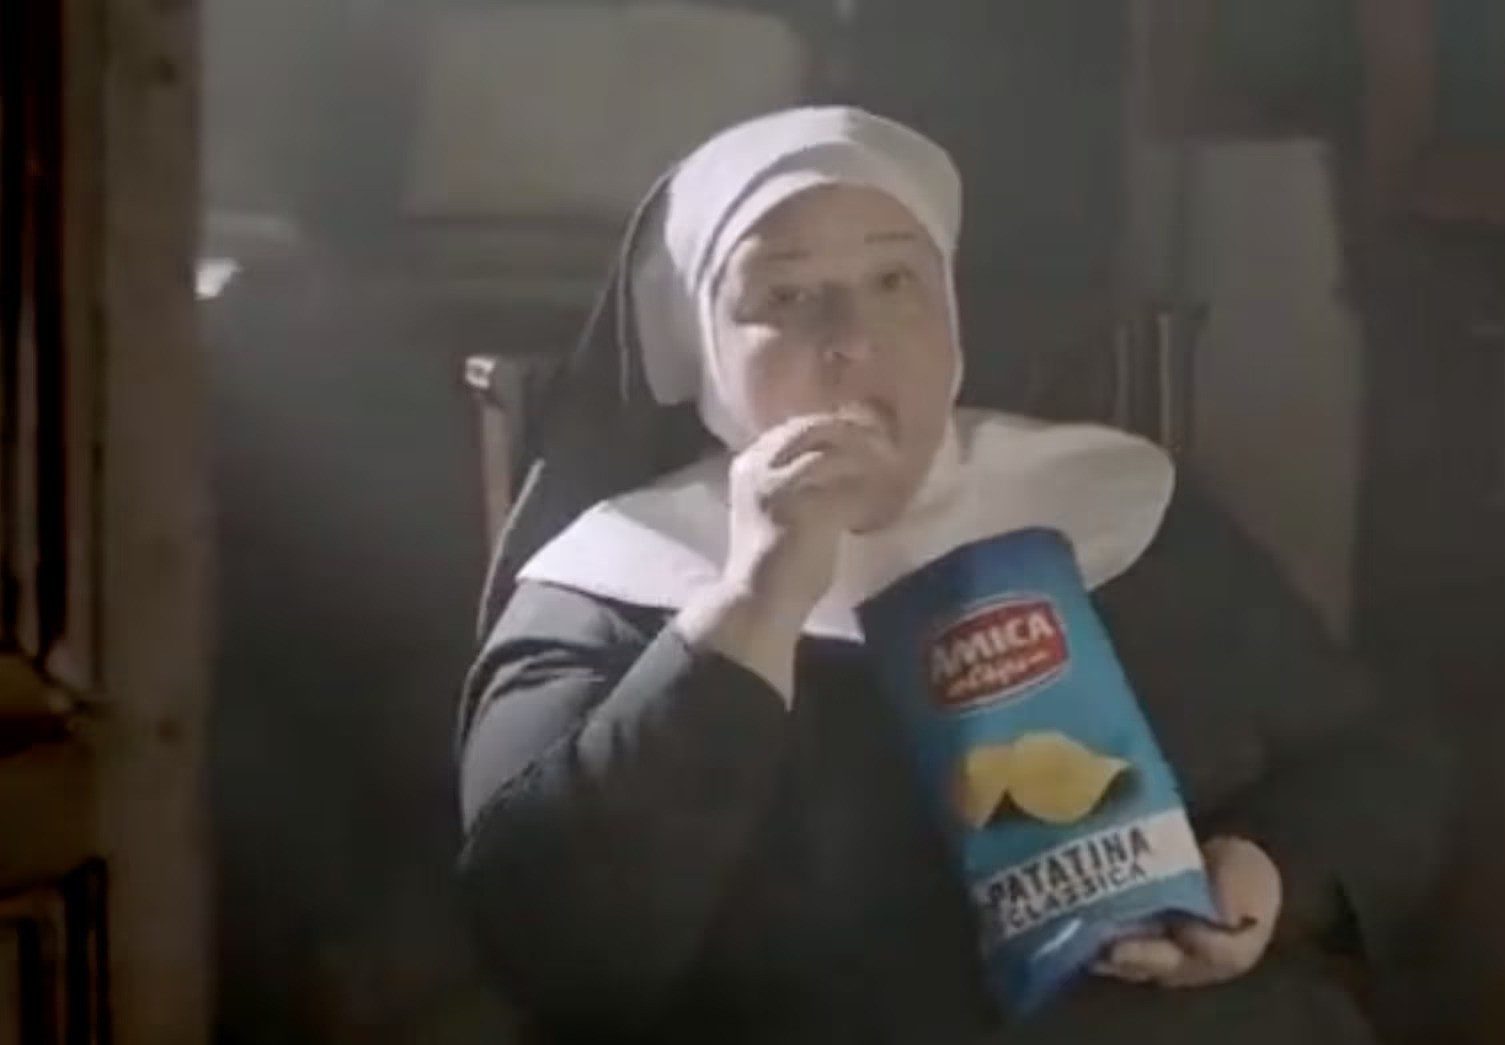 Σάλος στην Ιταλία με διαφήμιση που απεικονίζει καλόγριες να τρώνε πατατάκια για... Θεία Κοινωνία